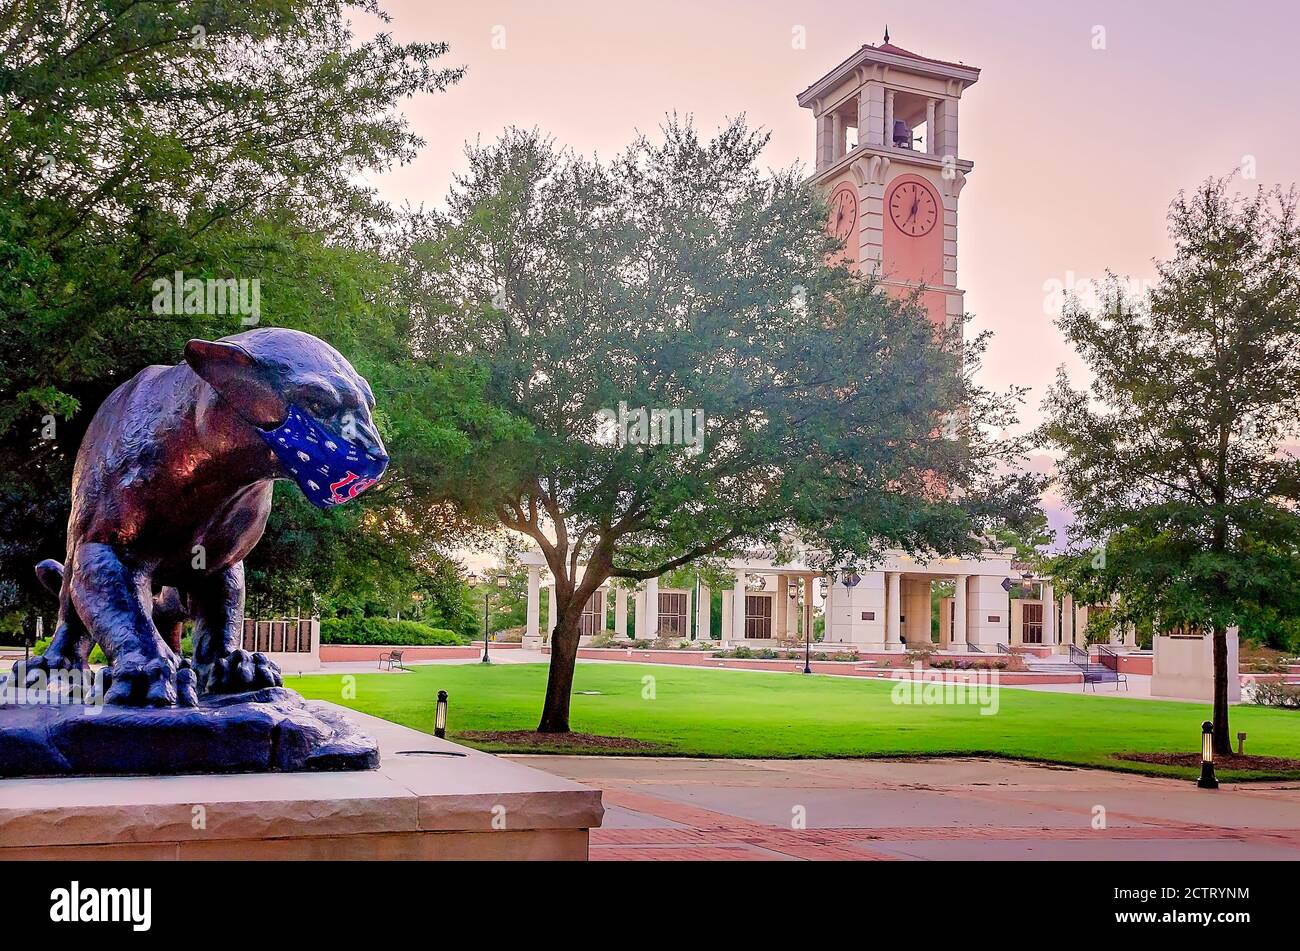 La mascotte de l'Université de l'Alabama du Sud, la jaguar, porte un masque pour empêcher la COVID-19, 22 août 2020, à Mobile, Alabama. Derrière lui se trouve la tour Molton. Banque D'Images